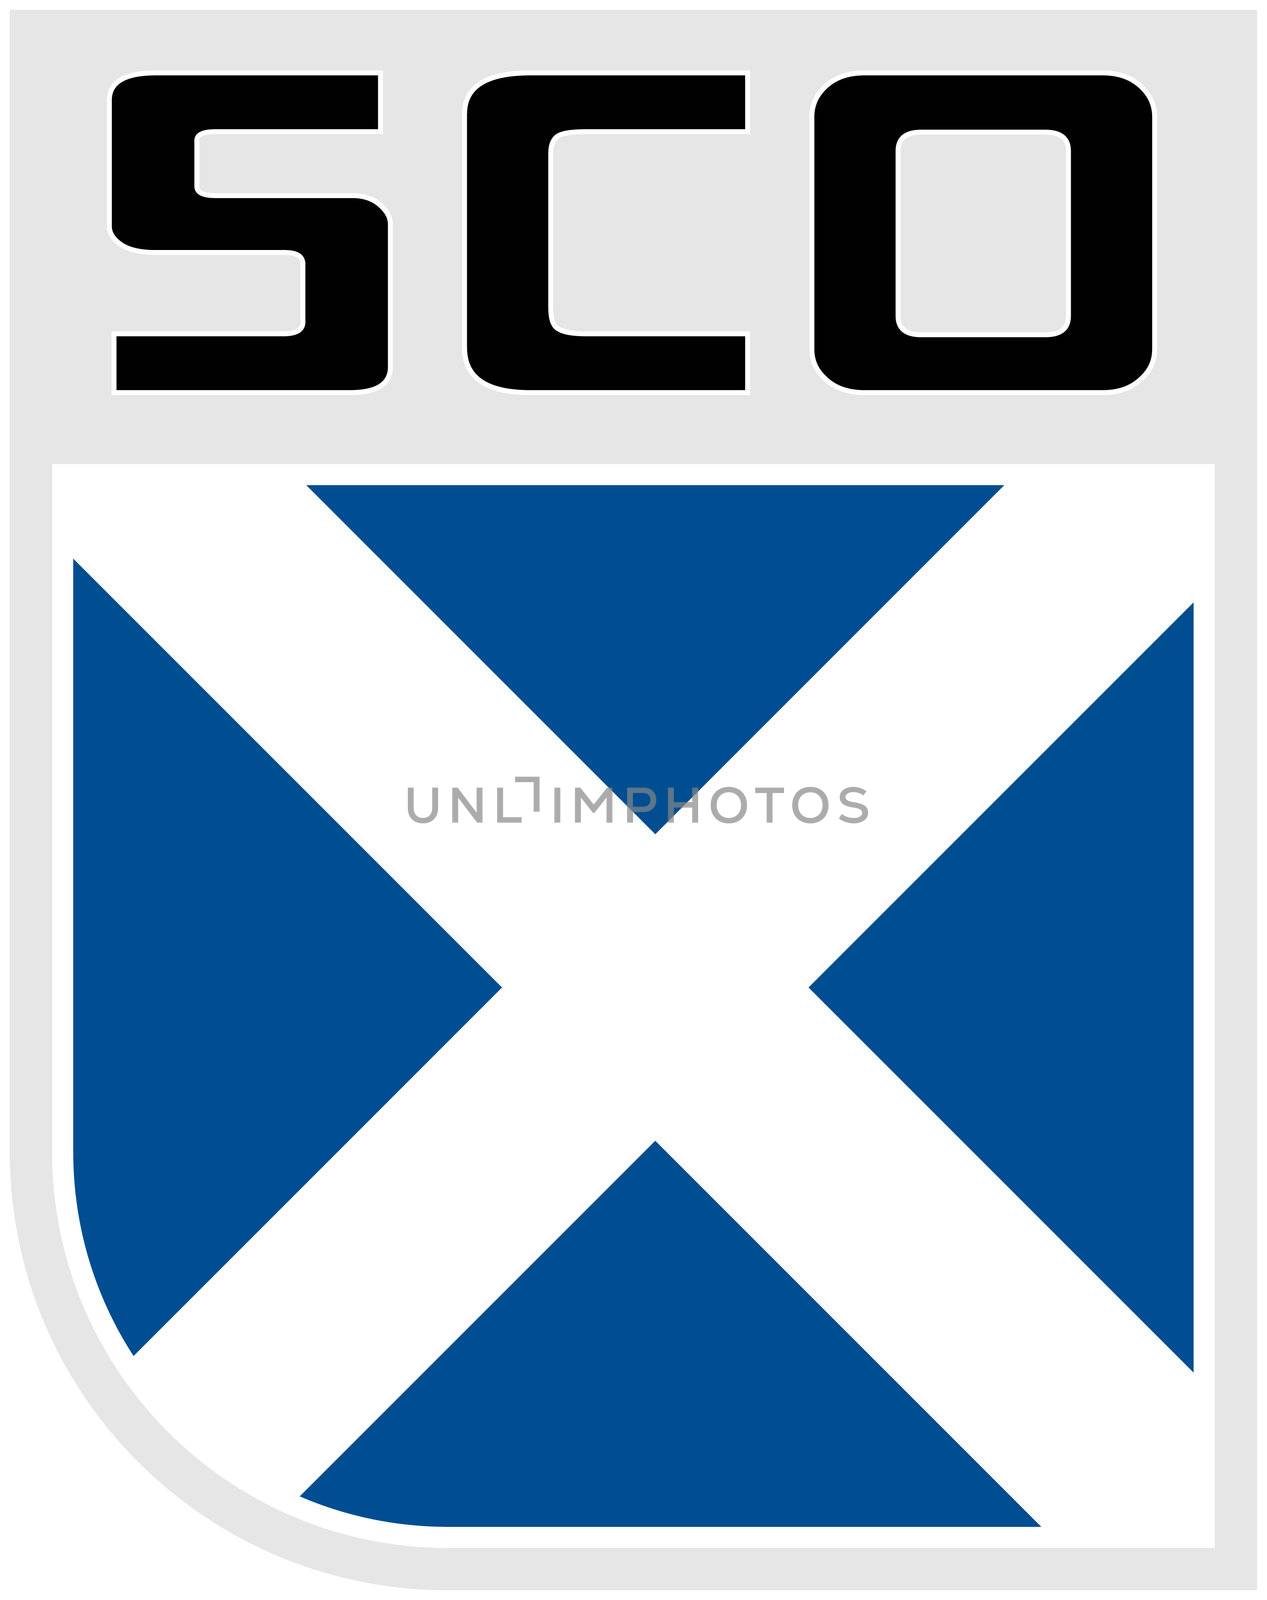 Flag of Scotland icon by patrimonio